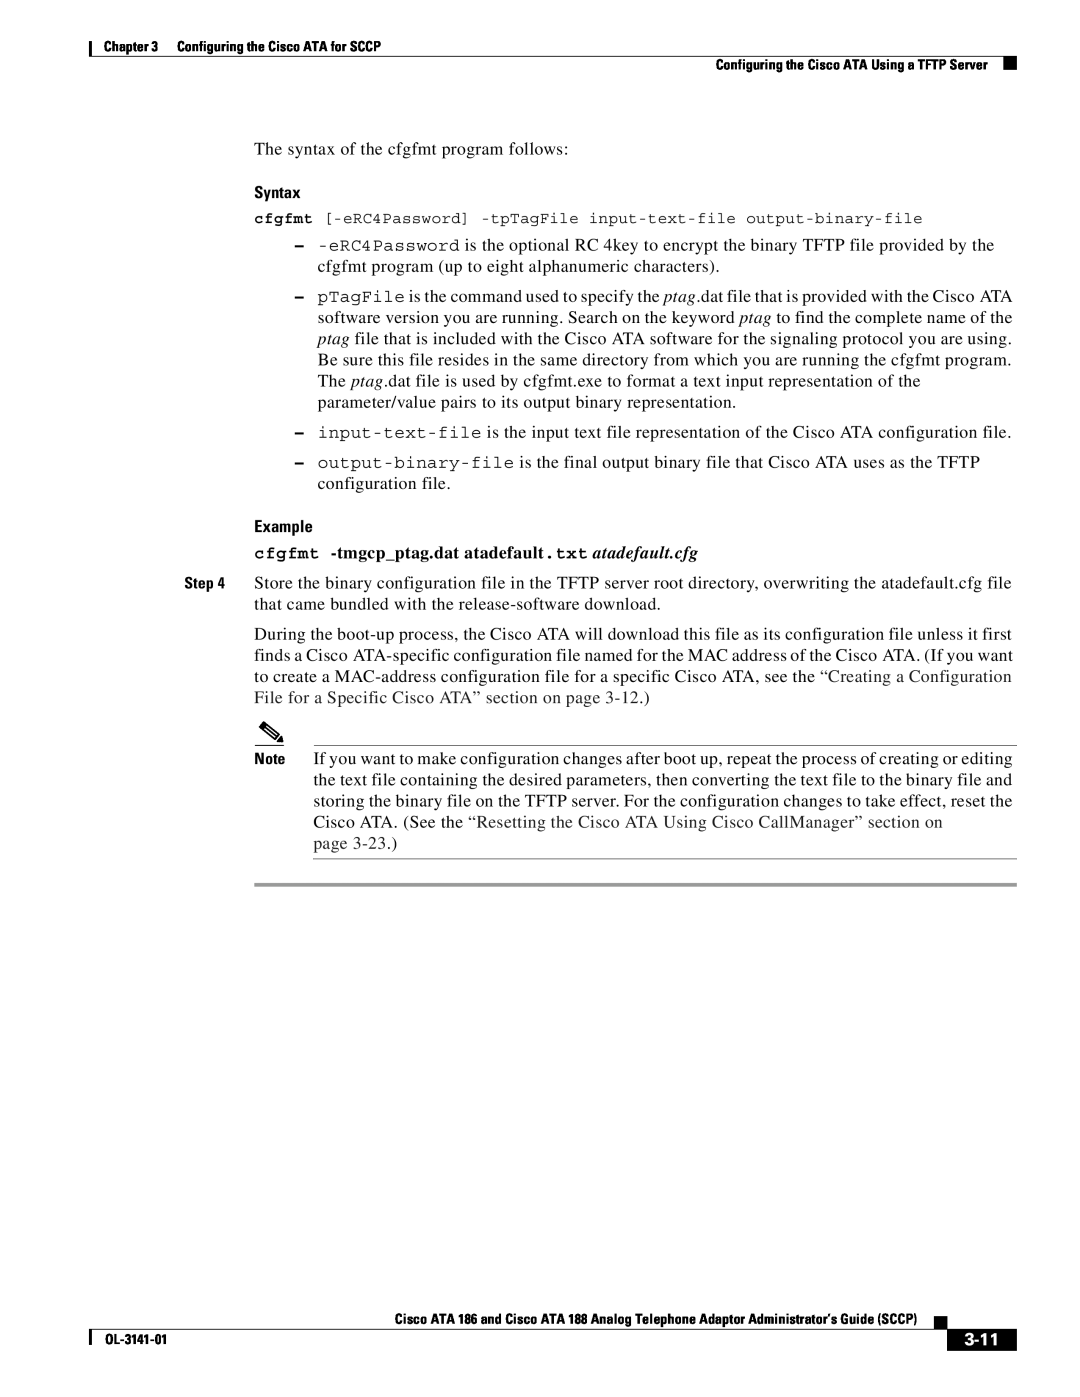 Cisco Systems ATA 188, ATA 186 manual Syntax, Example, cfgfmt -tmgcpptag.dat atadefault.txt atadefault.cfg, page, 3-11 